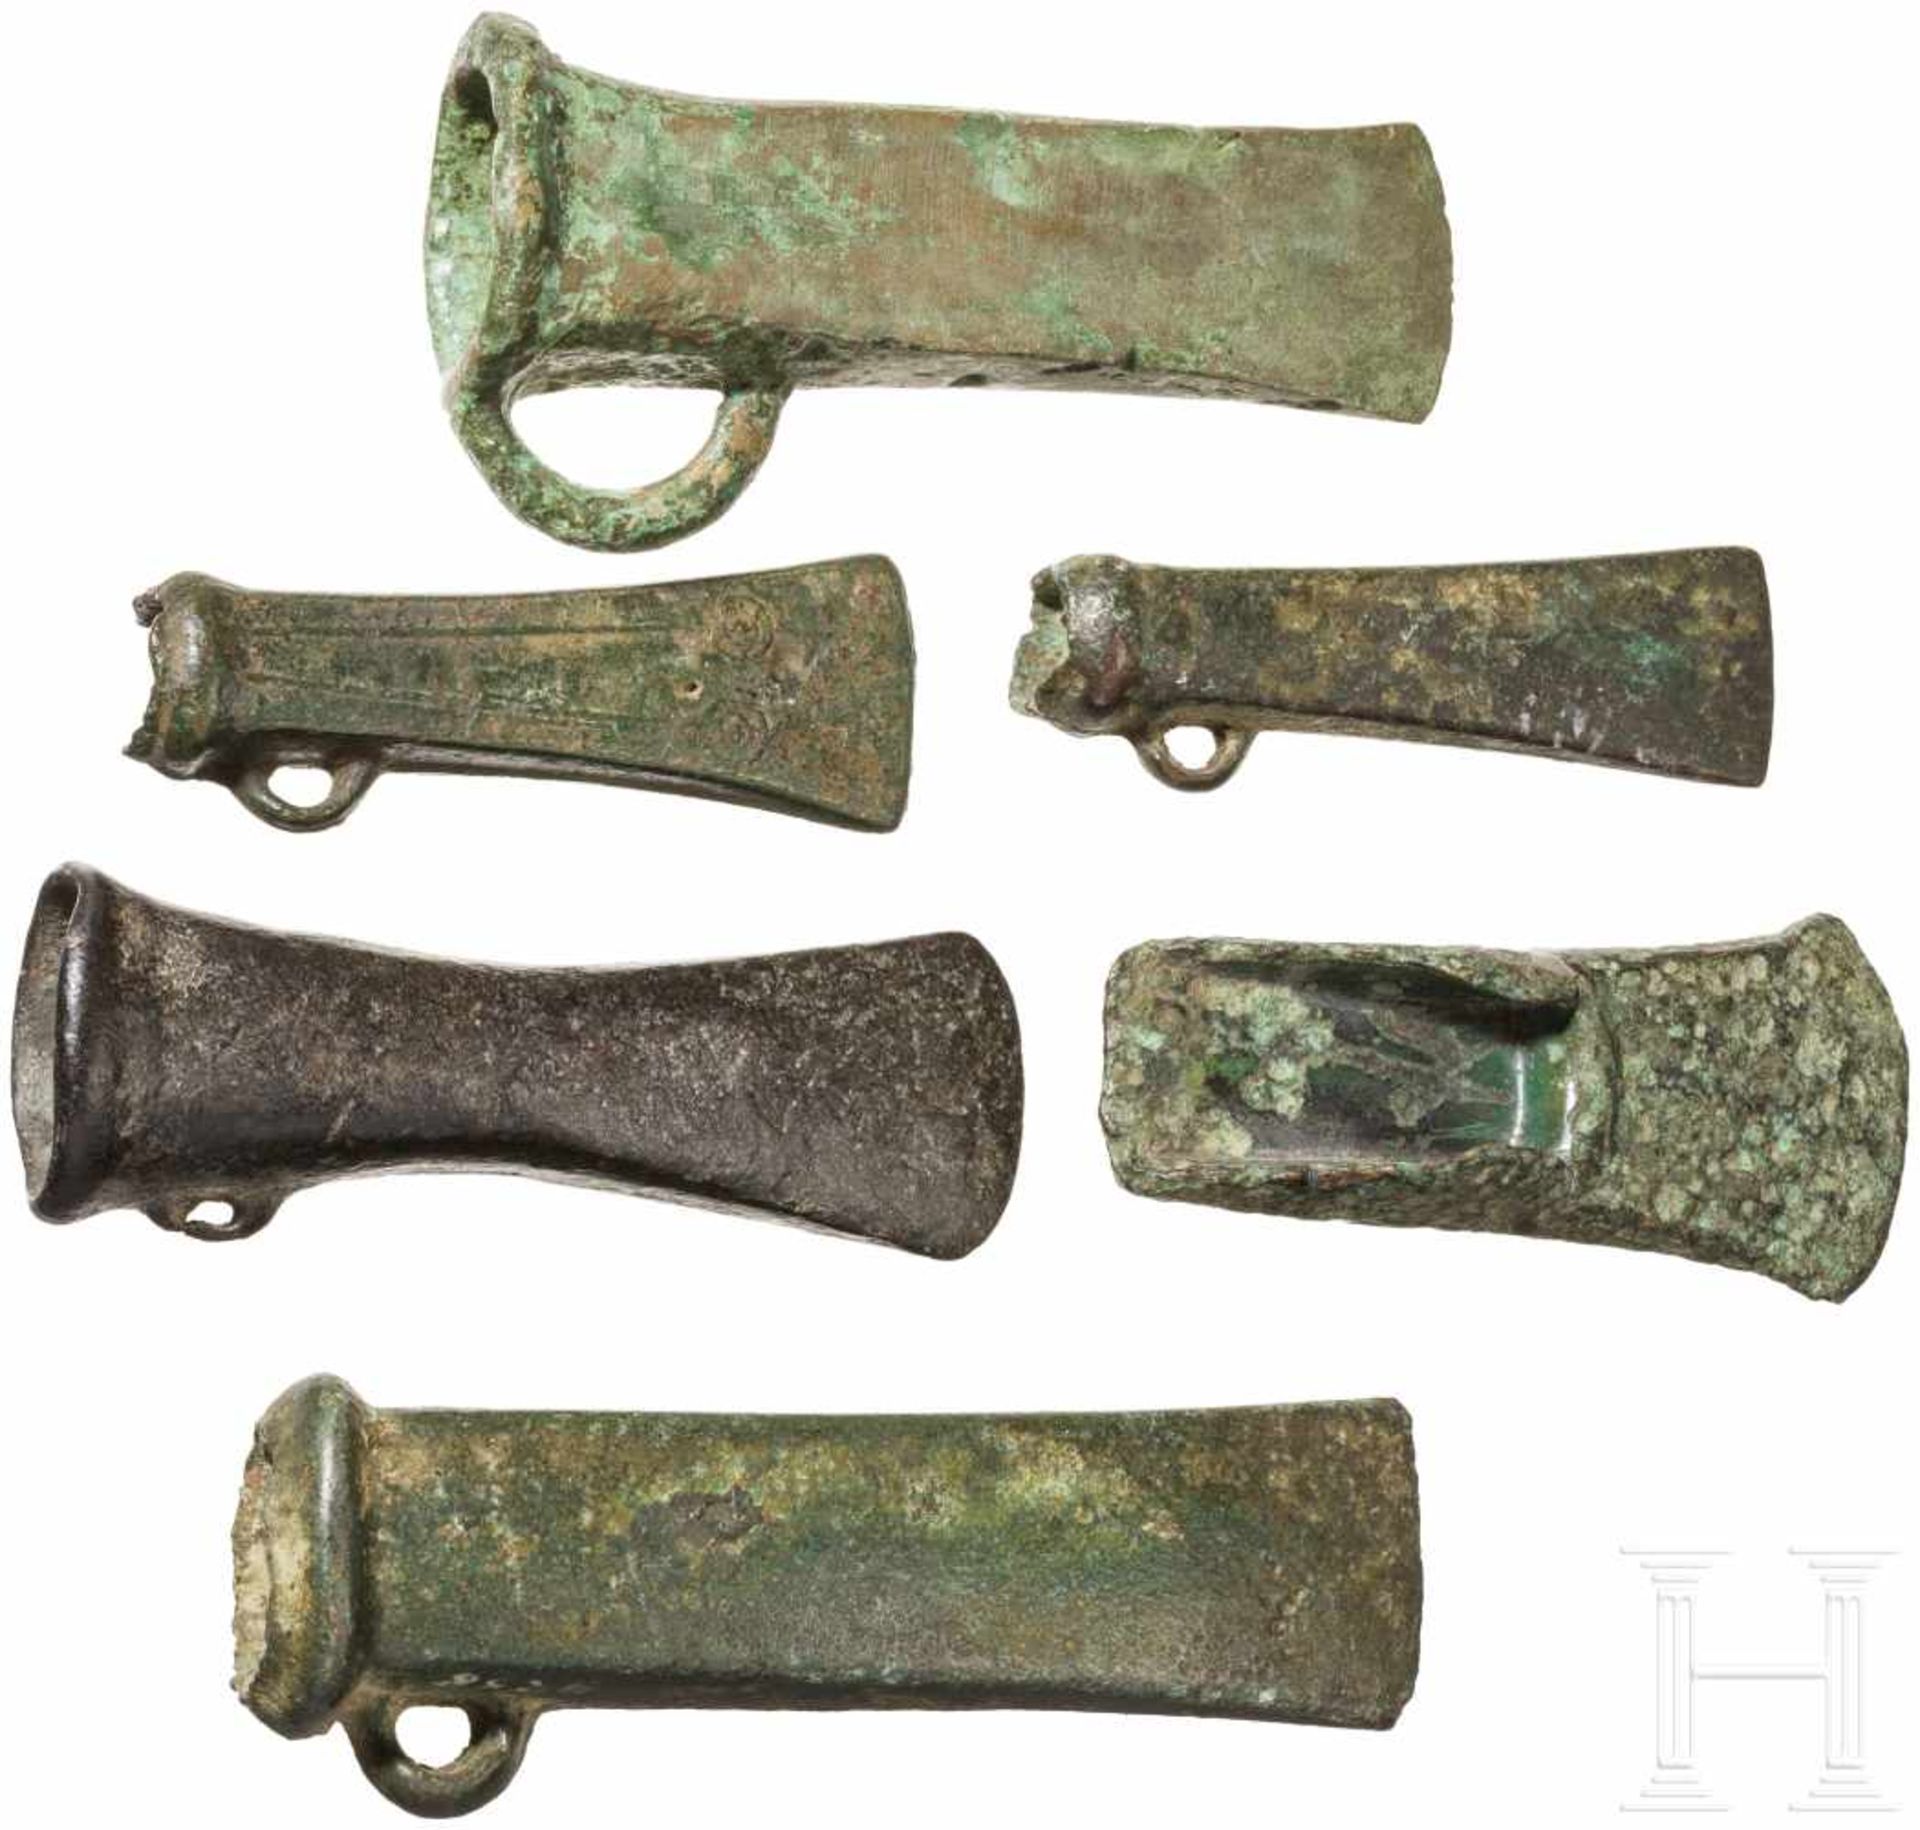 Fünf Tüllenbeile und ein Lappenbeil, Mitteleuropa, Spätbronzezeit, 1100 - 800 v. Chr.Ein kurzes,